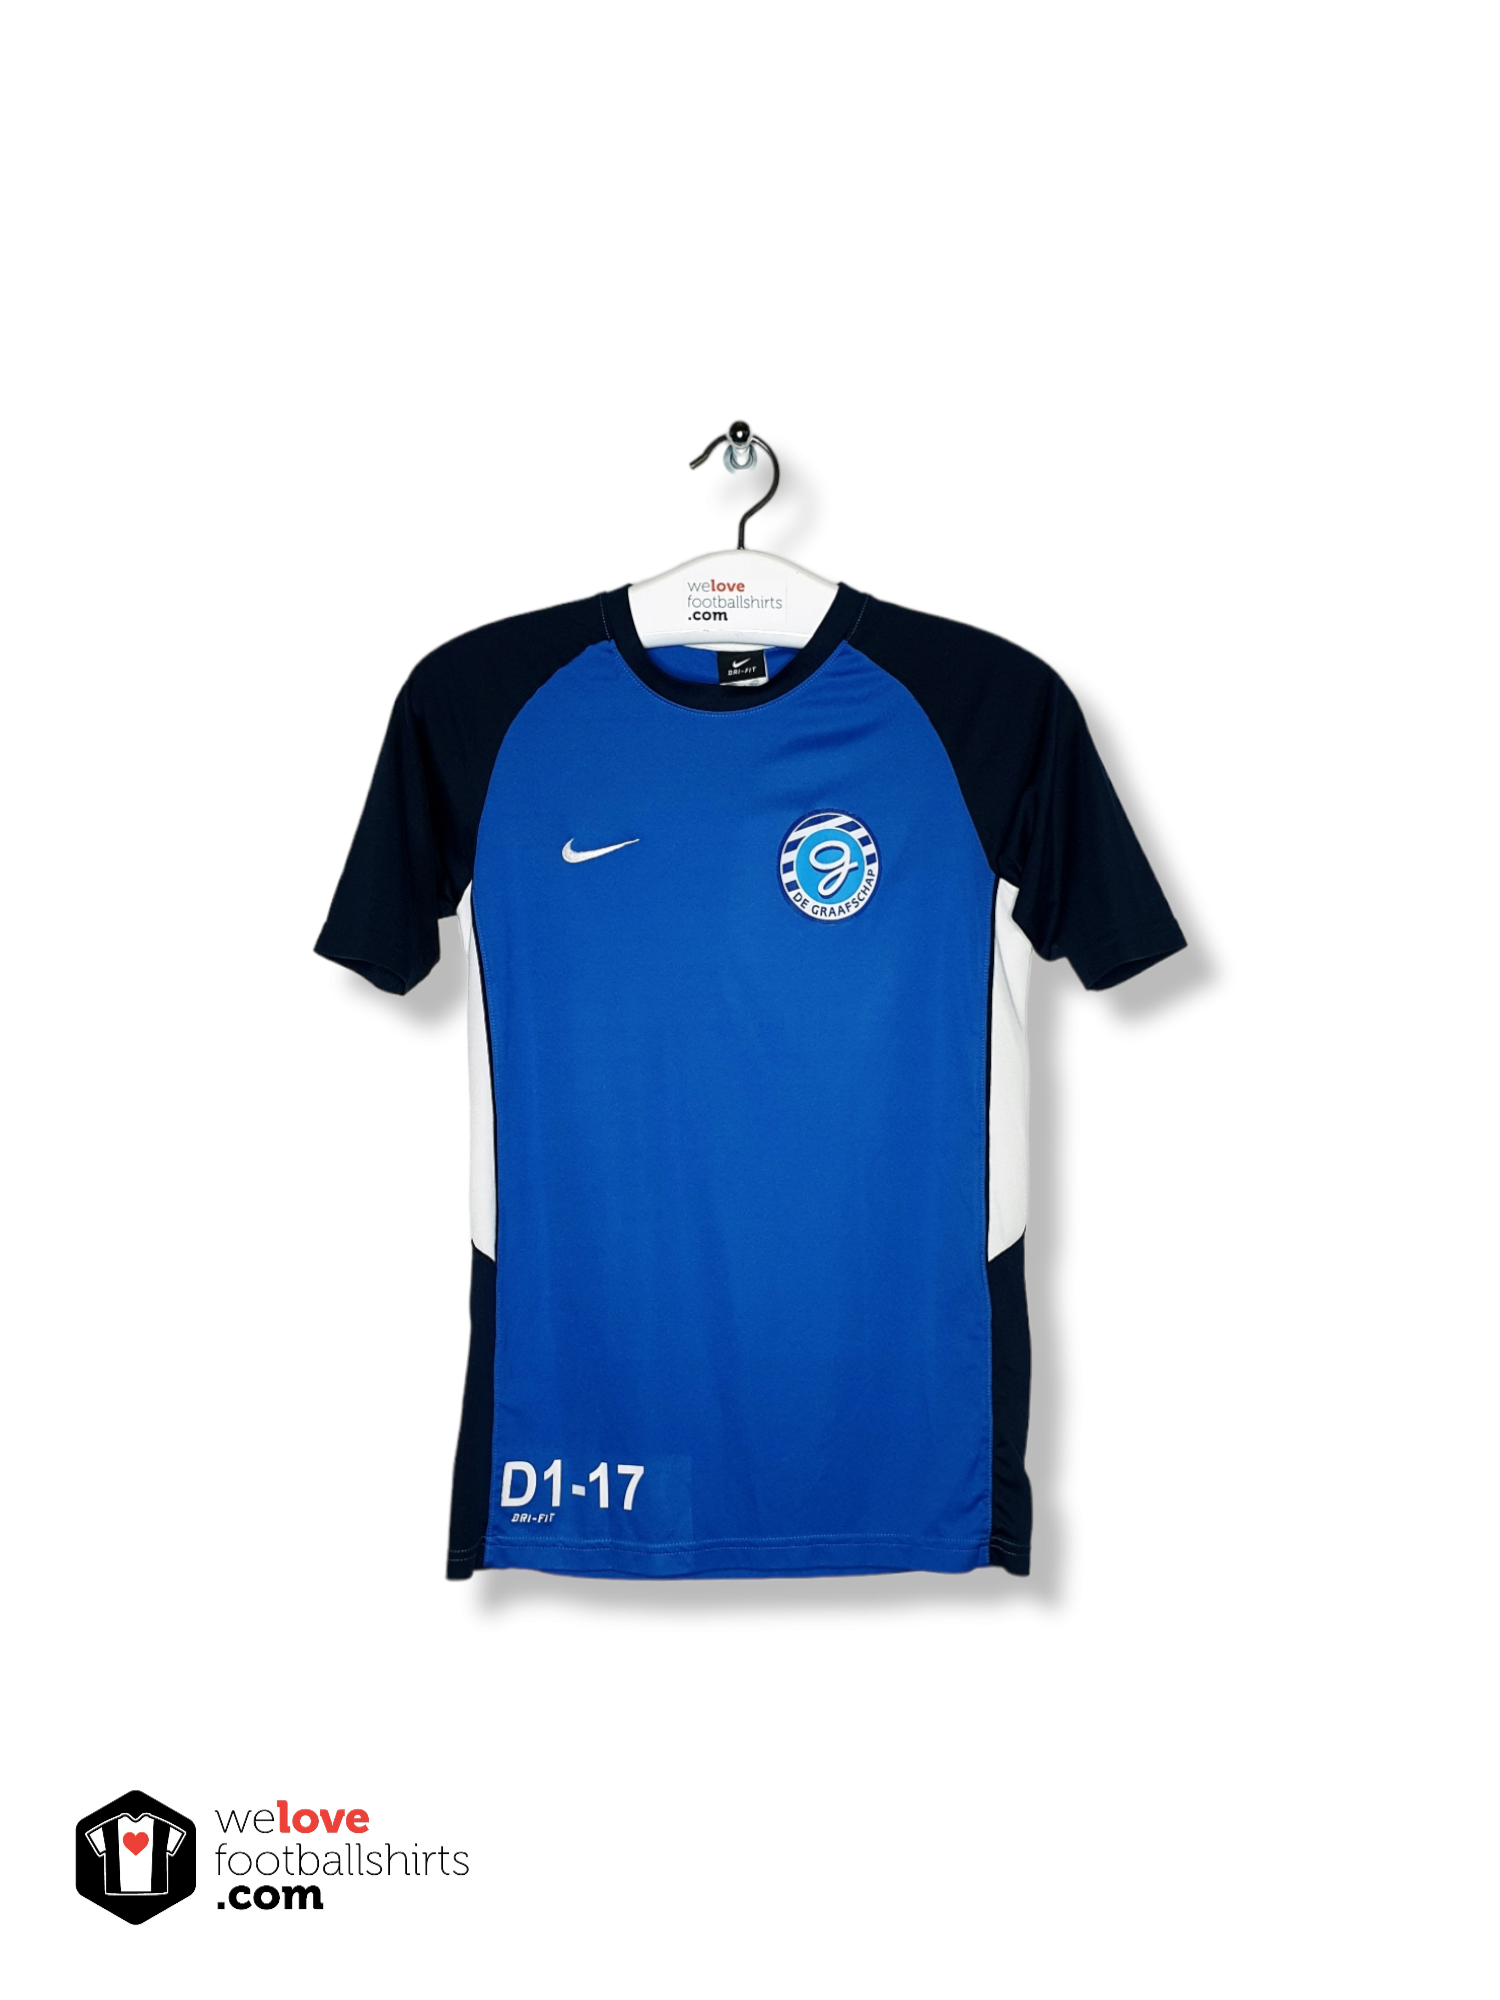 test Bedrijfsomschrijving seks Nike training shirt De Graafschap 2016/17 - Welovefootballshirts.com